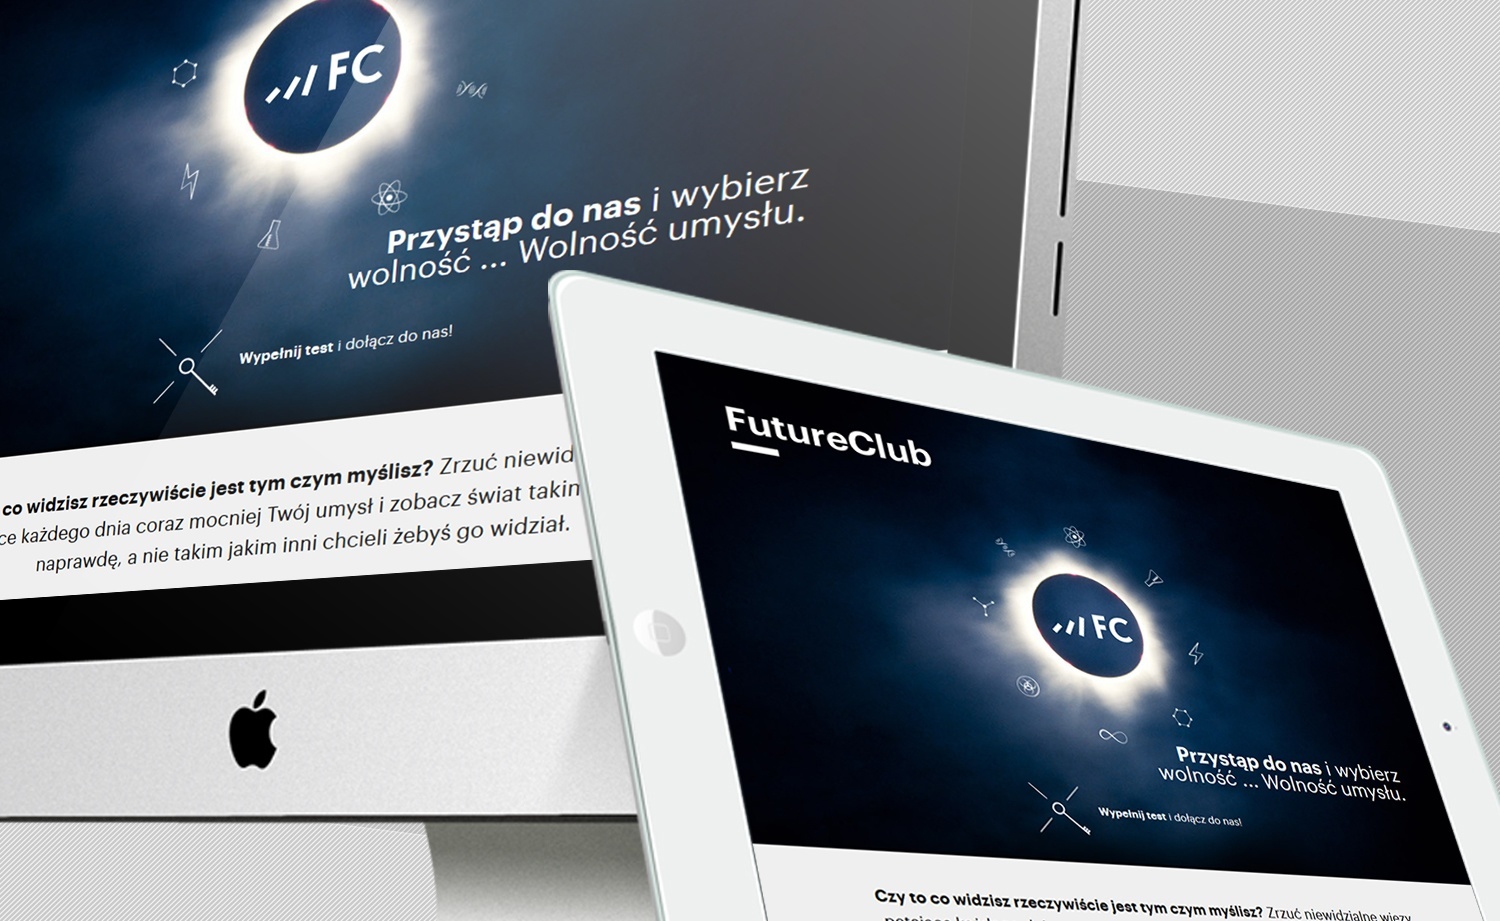 EFC: Future Club